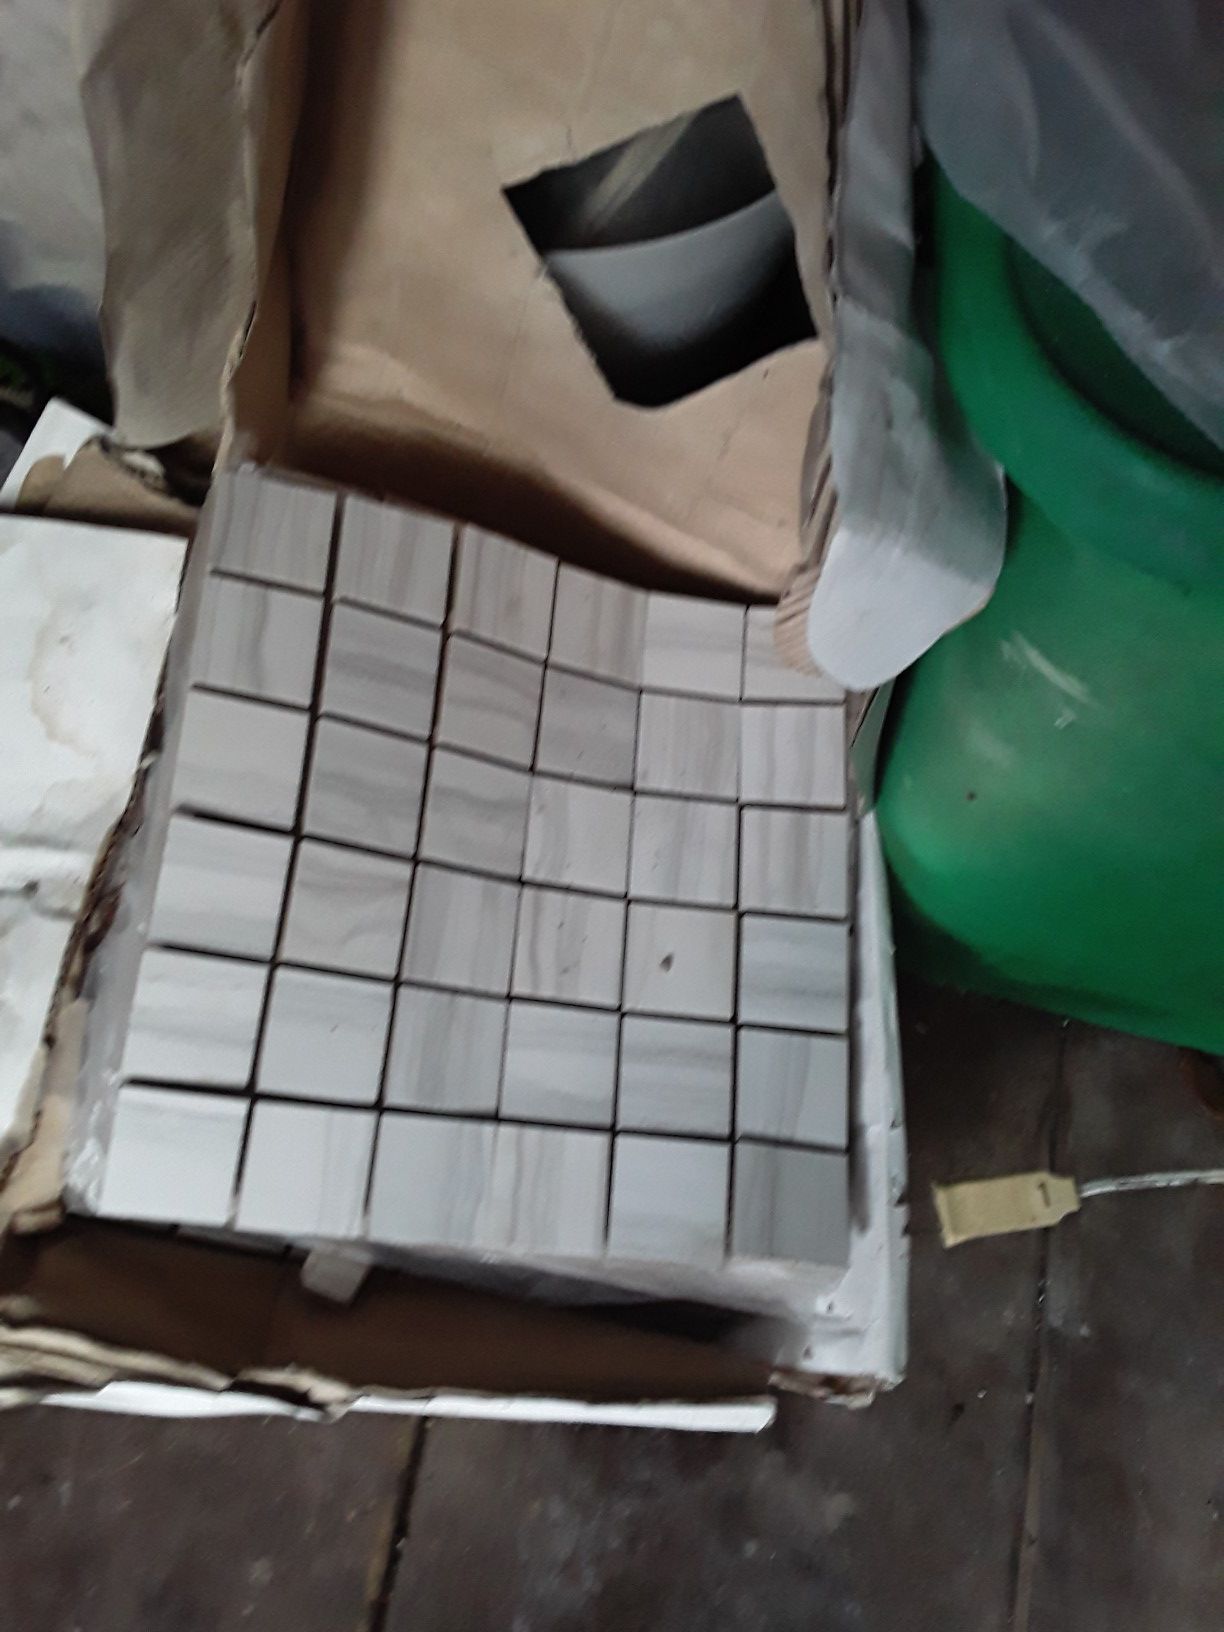 Tile shower floor. 13 piezas de 12× 12 inch